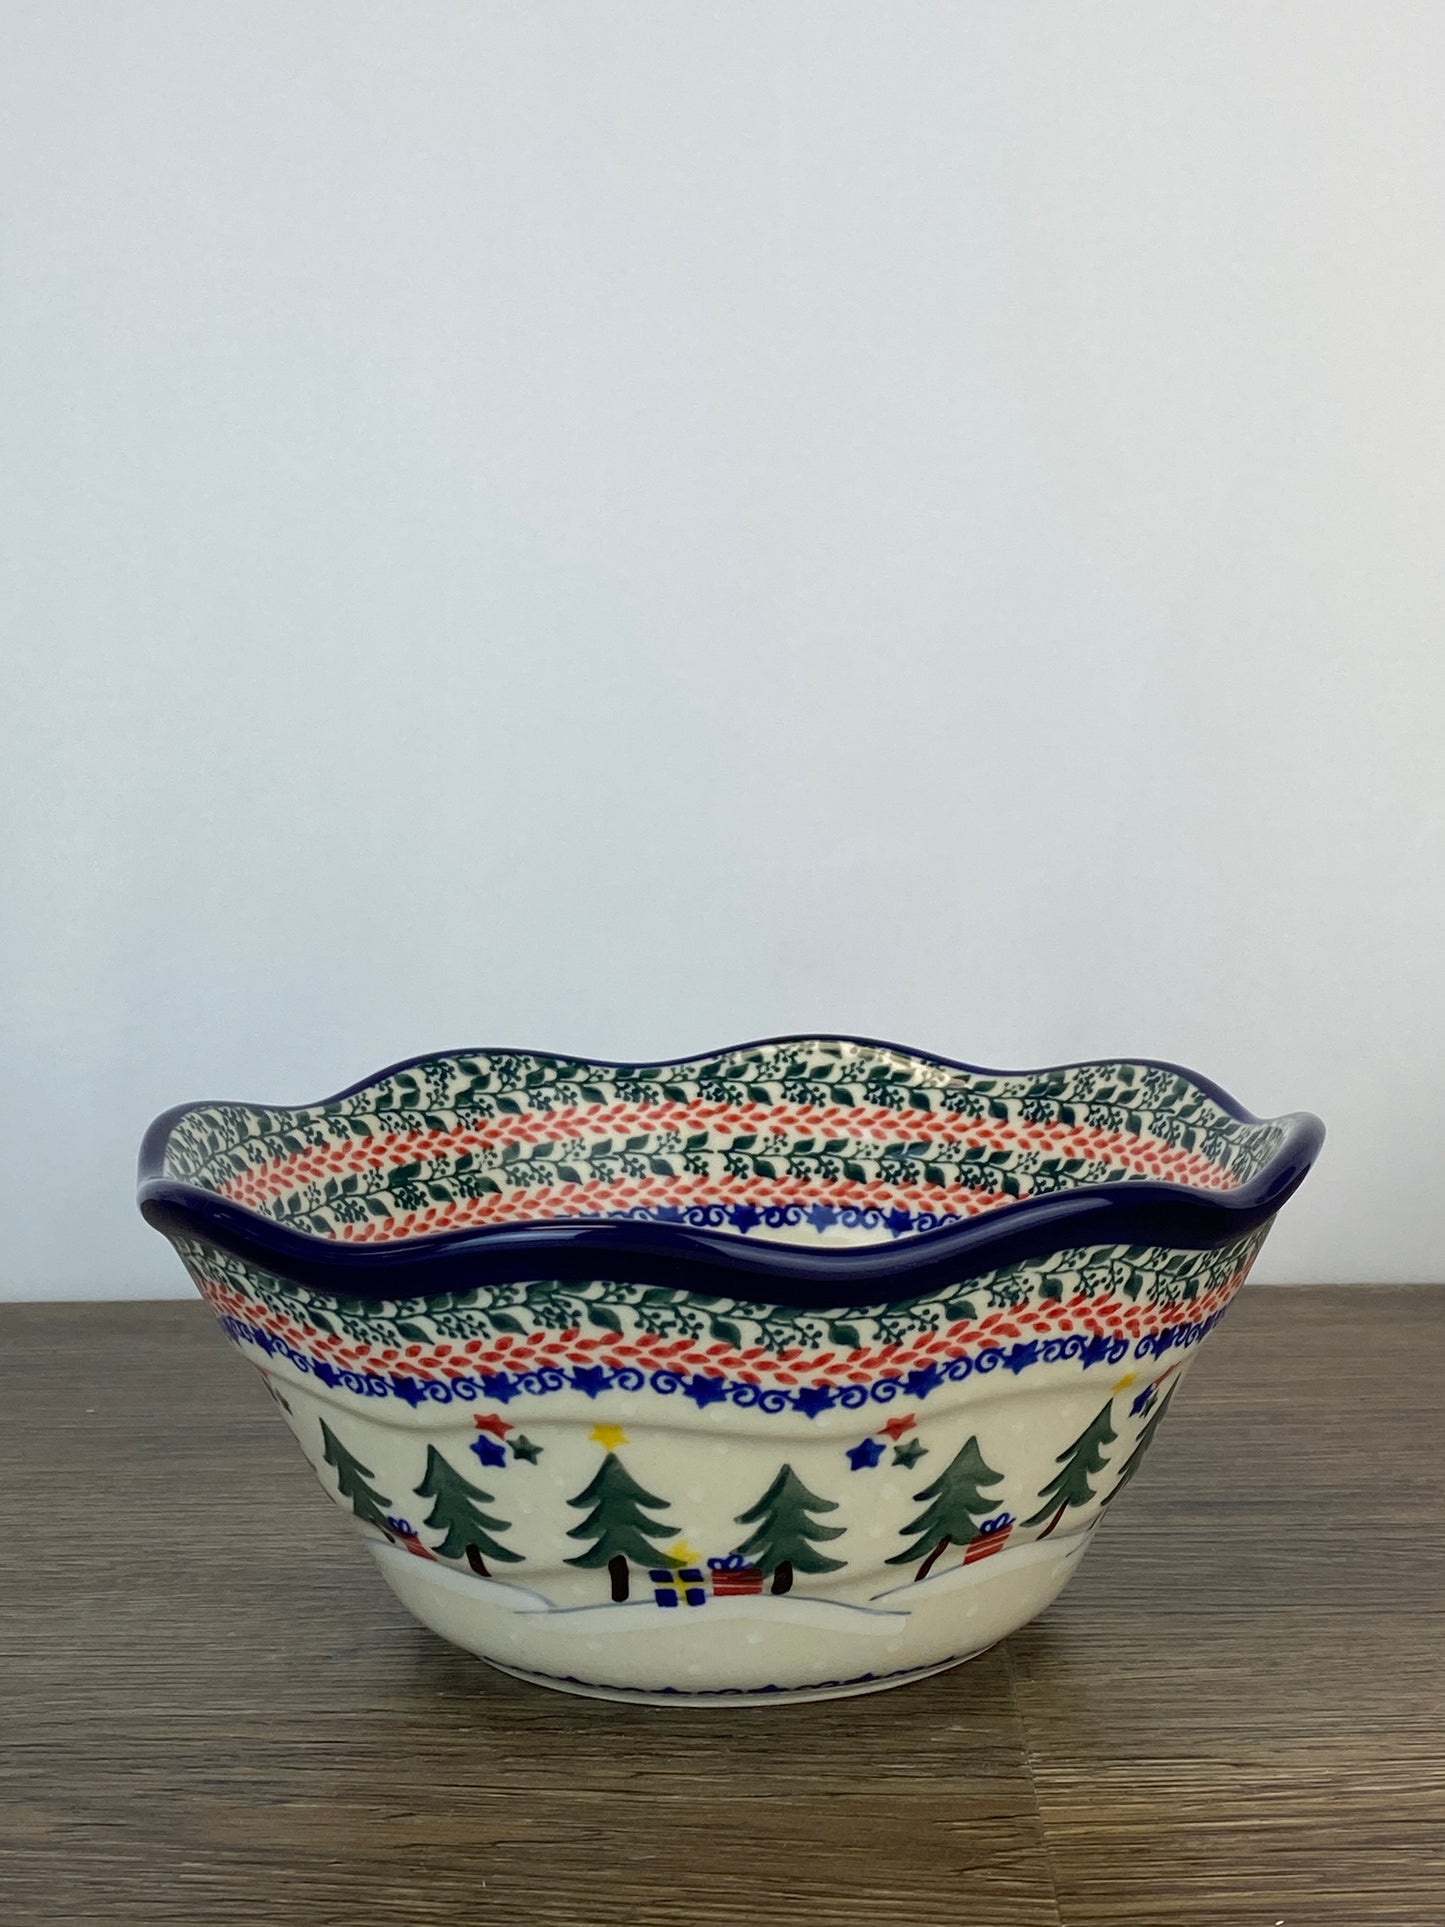 SALE Small Wavy Unikat Bowl - Shape 691 - Pattern U5001